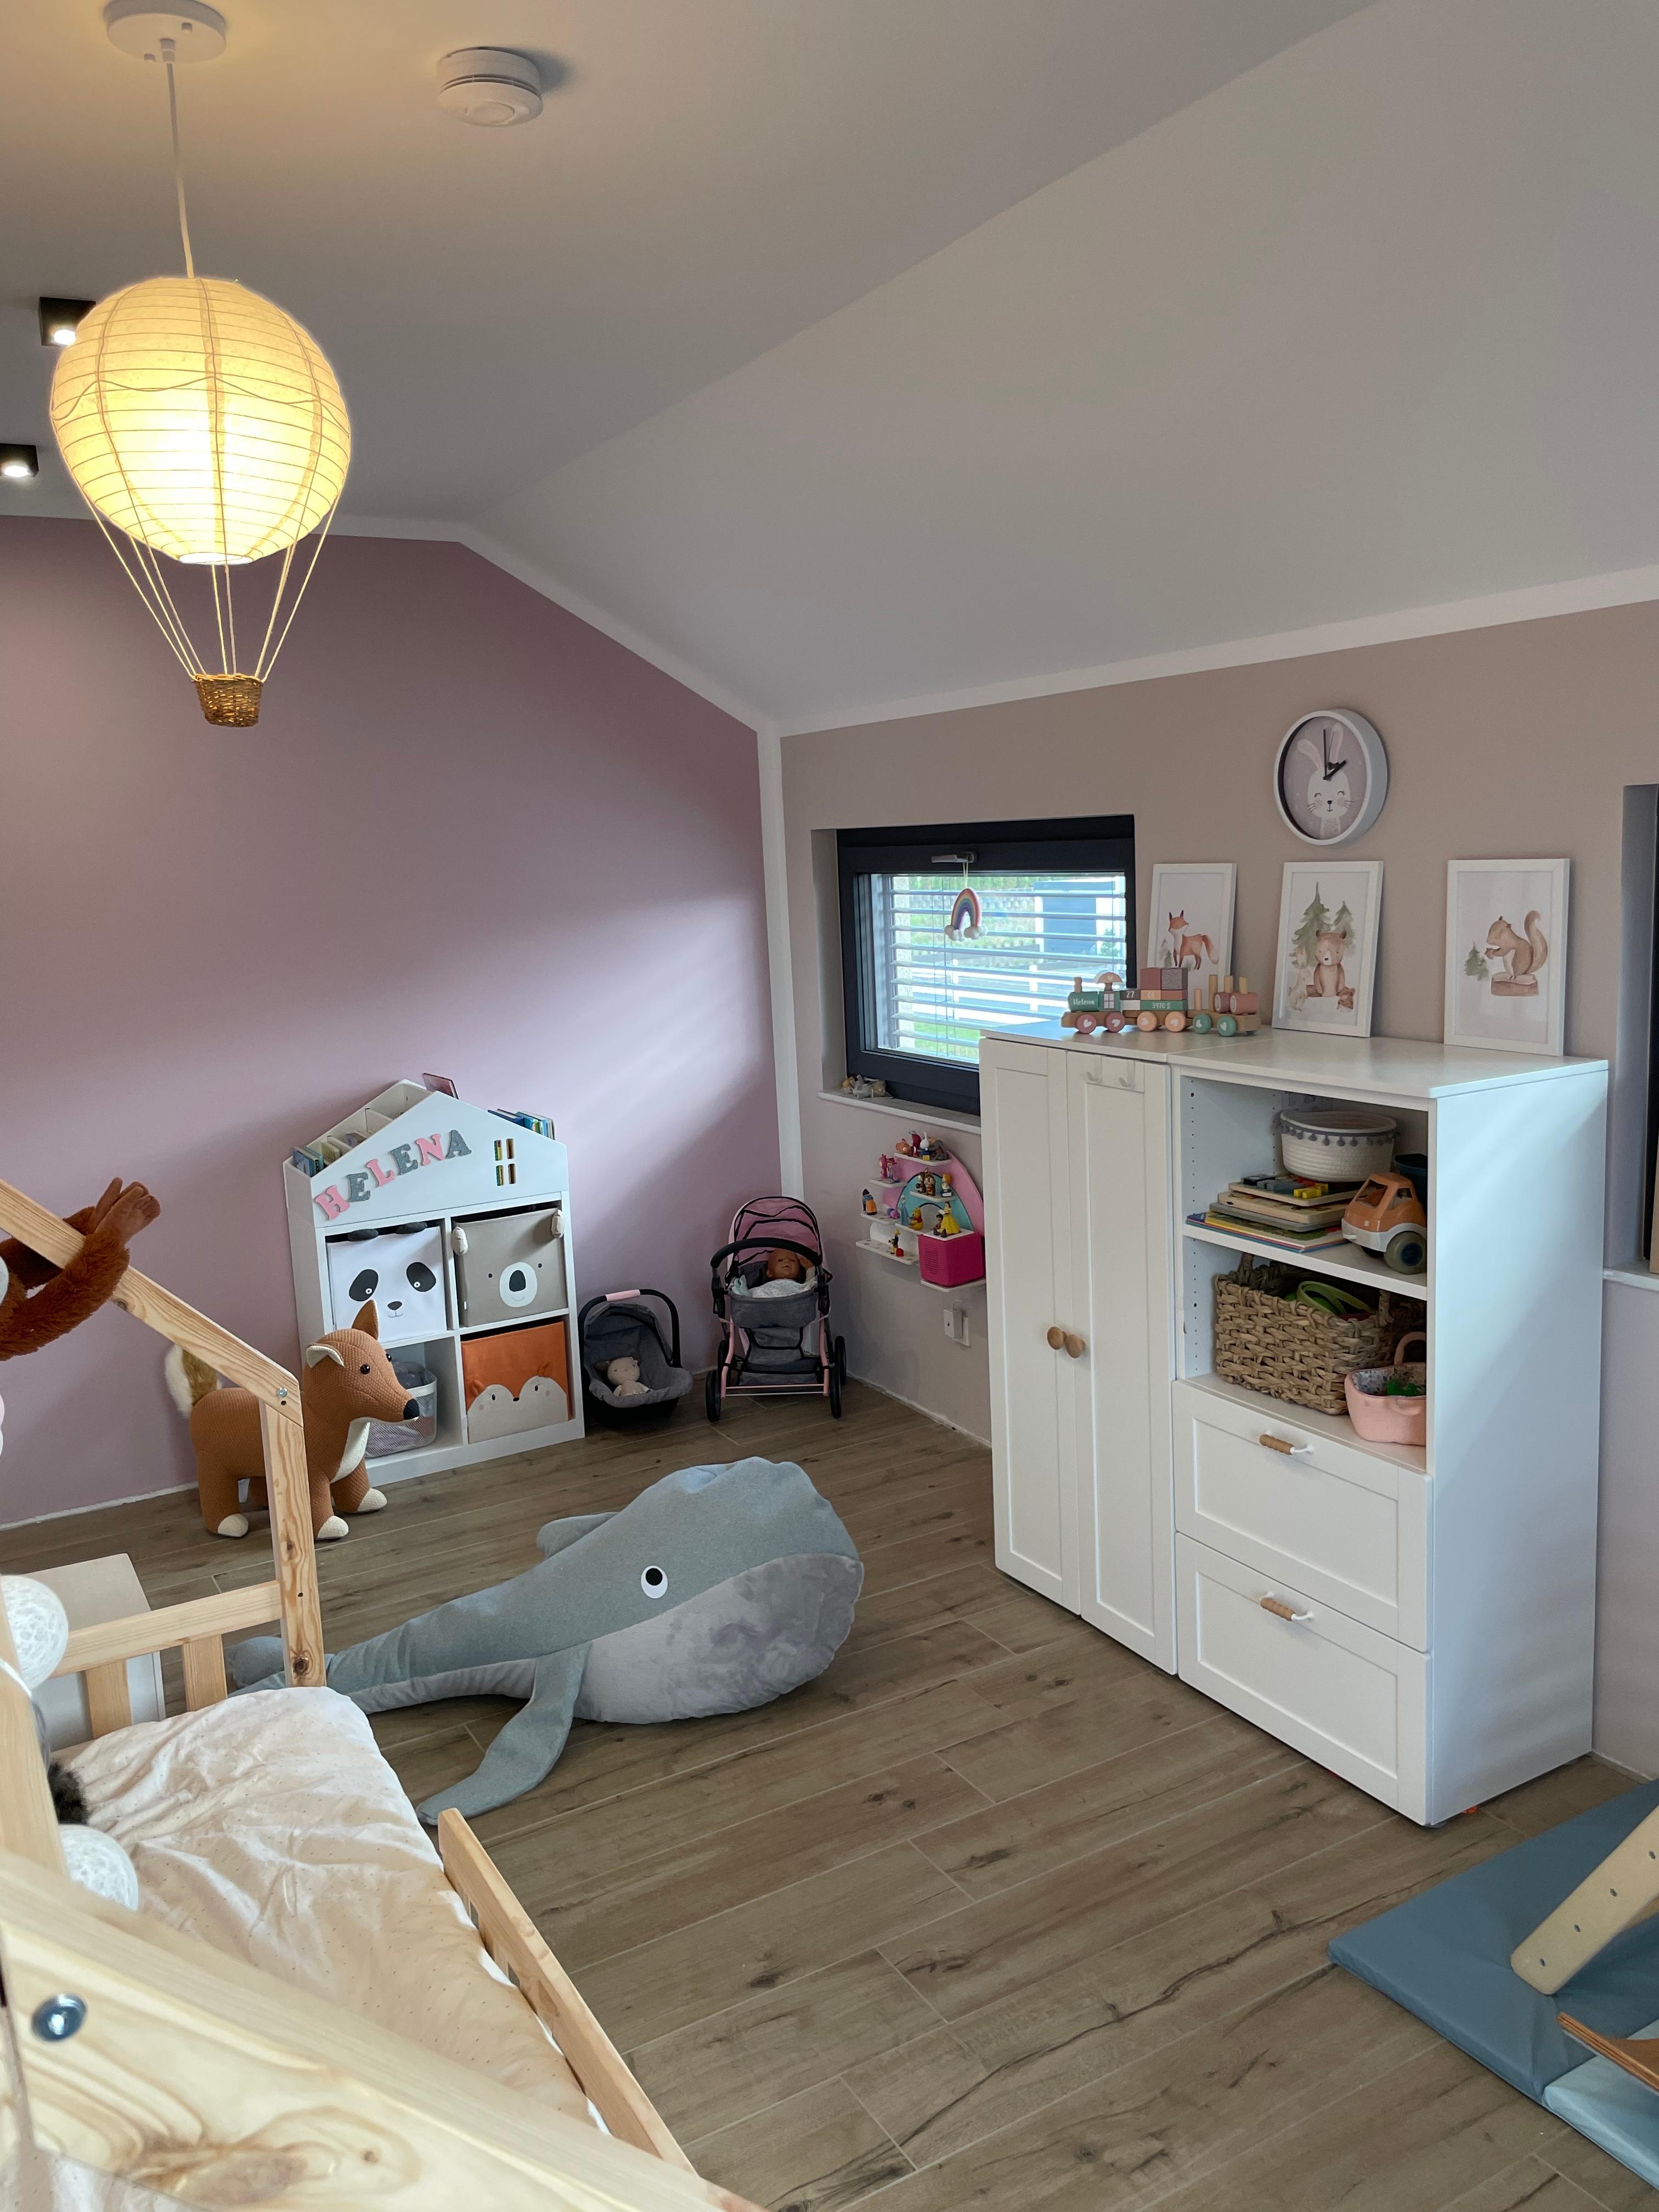 Mädchenzimmer 🫶🏻 
#rosa #kinderzimmer #einrichtung #ikea #holzfliesen #mädchenzimmer #interior #hausbau #mädchenmama